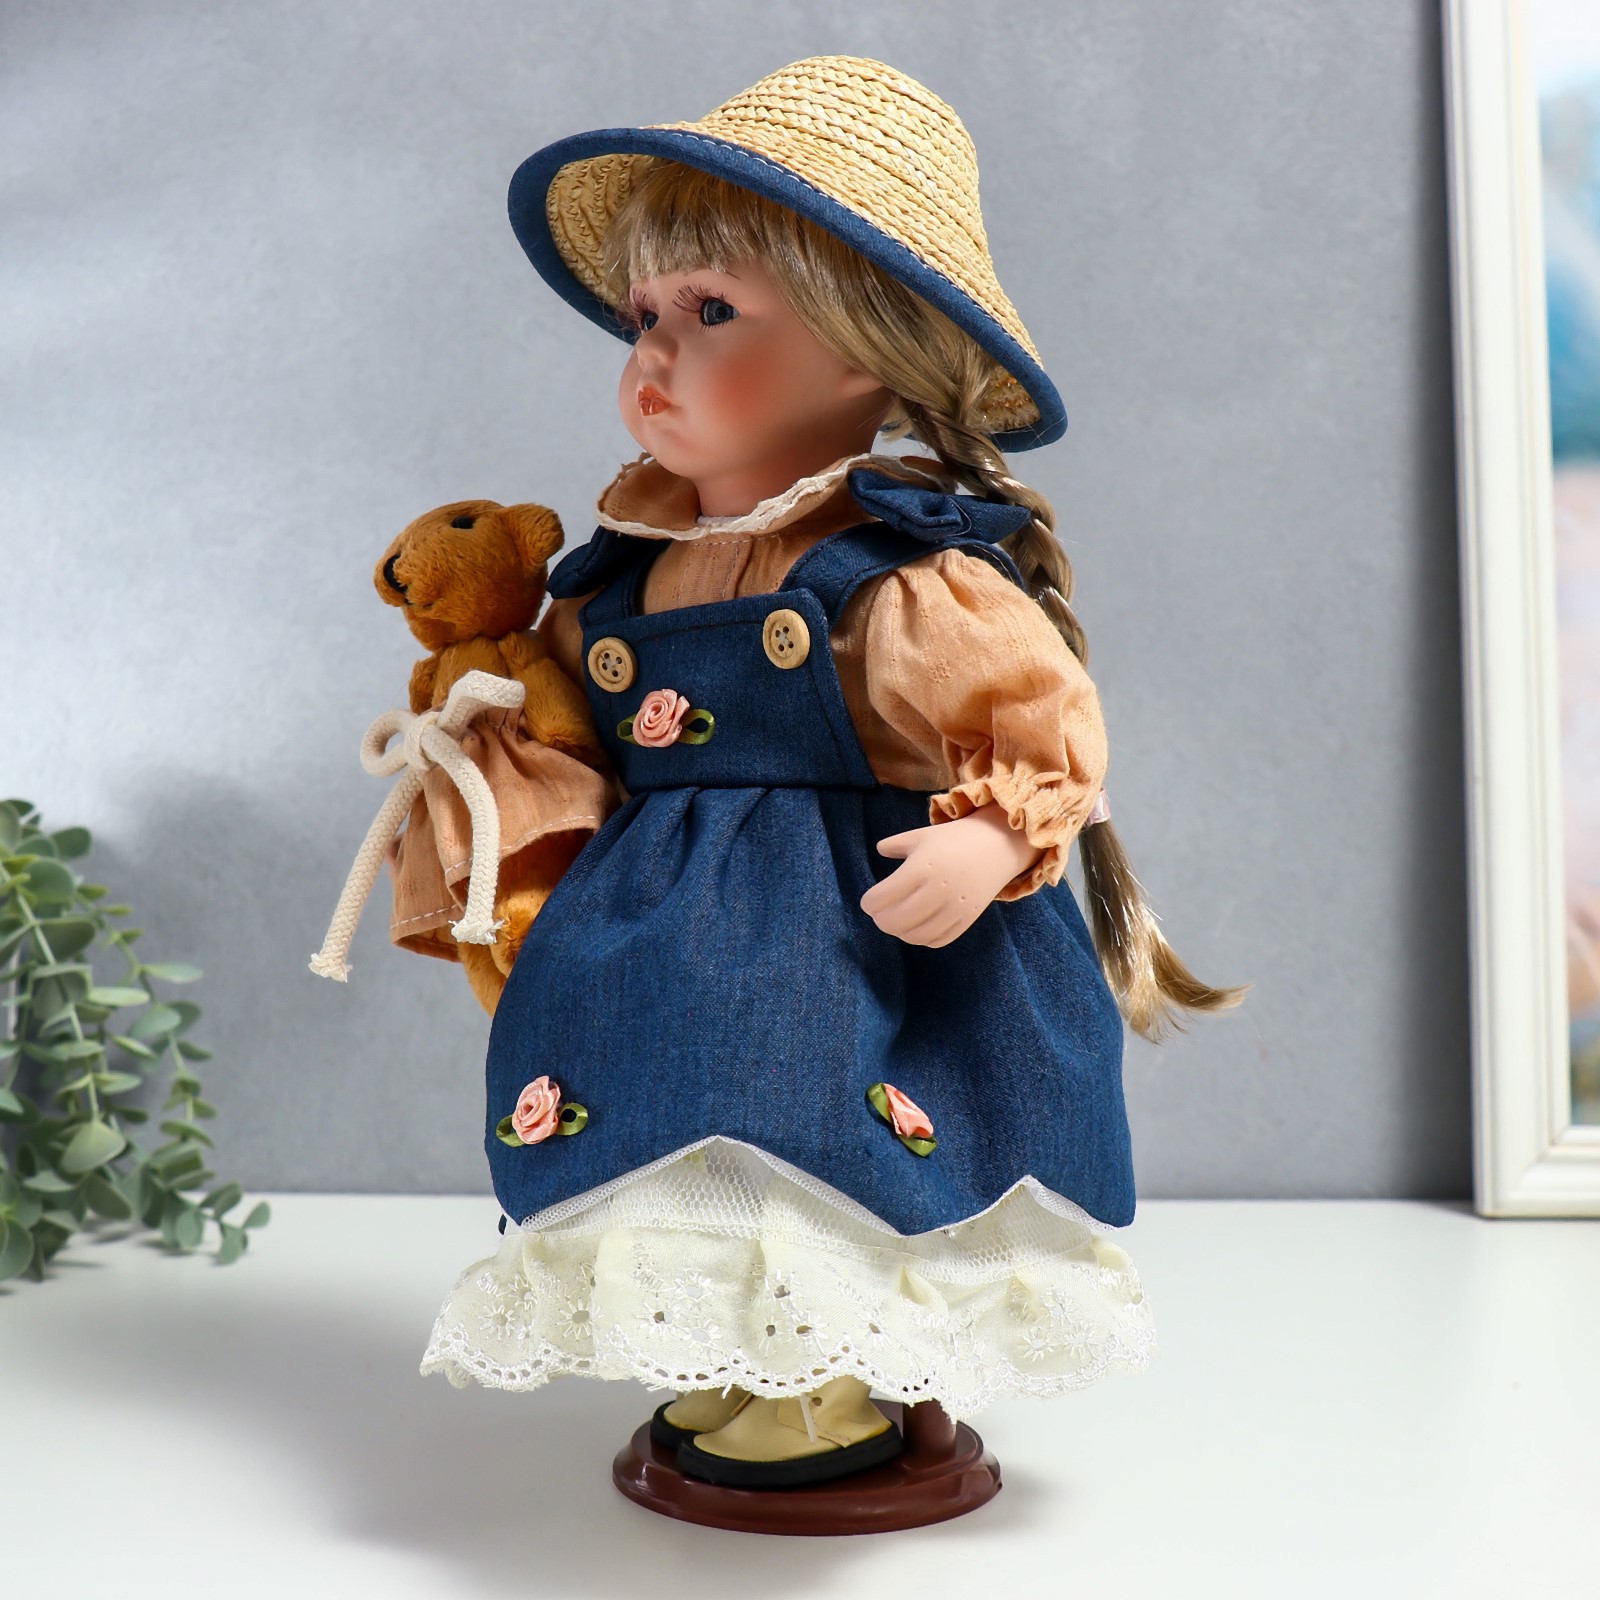 Кукла коллекционная Зимнее волшебство керамика «Сьюзи в джинсовом платье шляпке и с мишкой» 30 см - фото 3